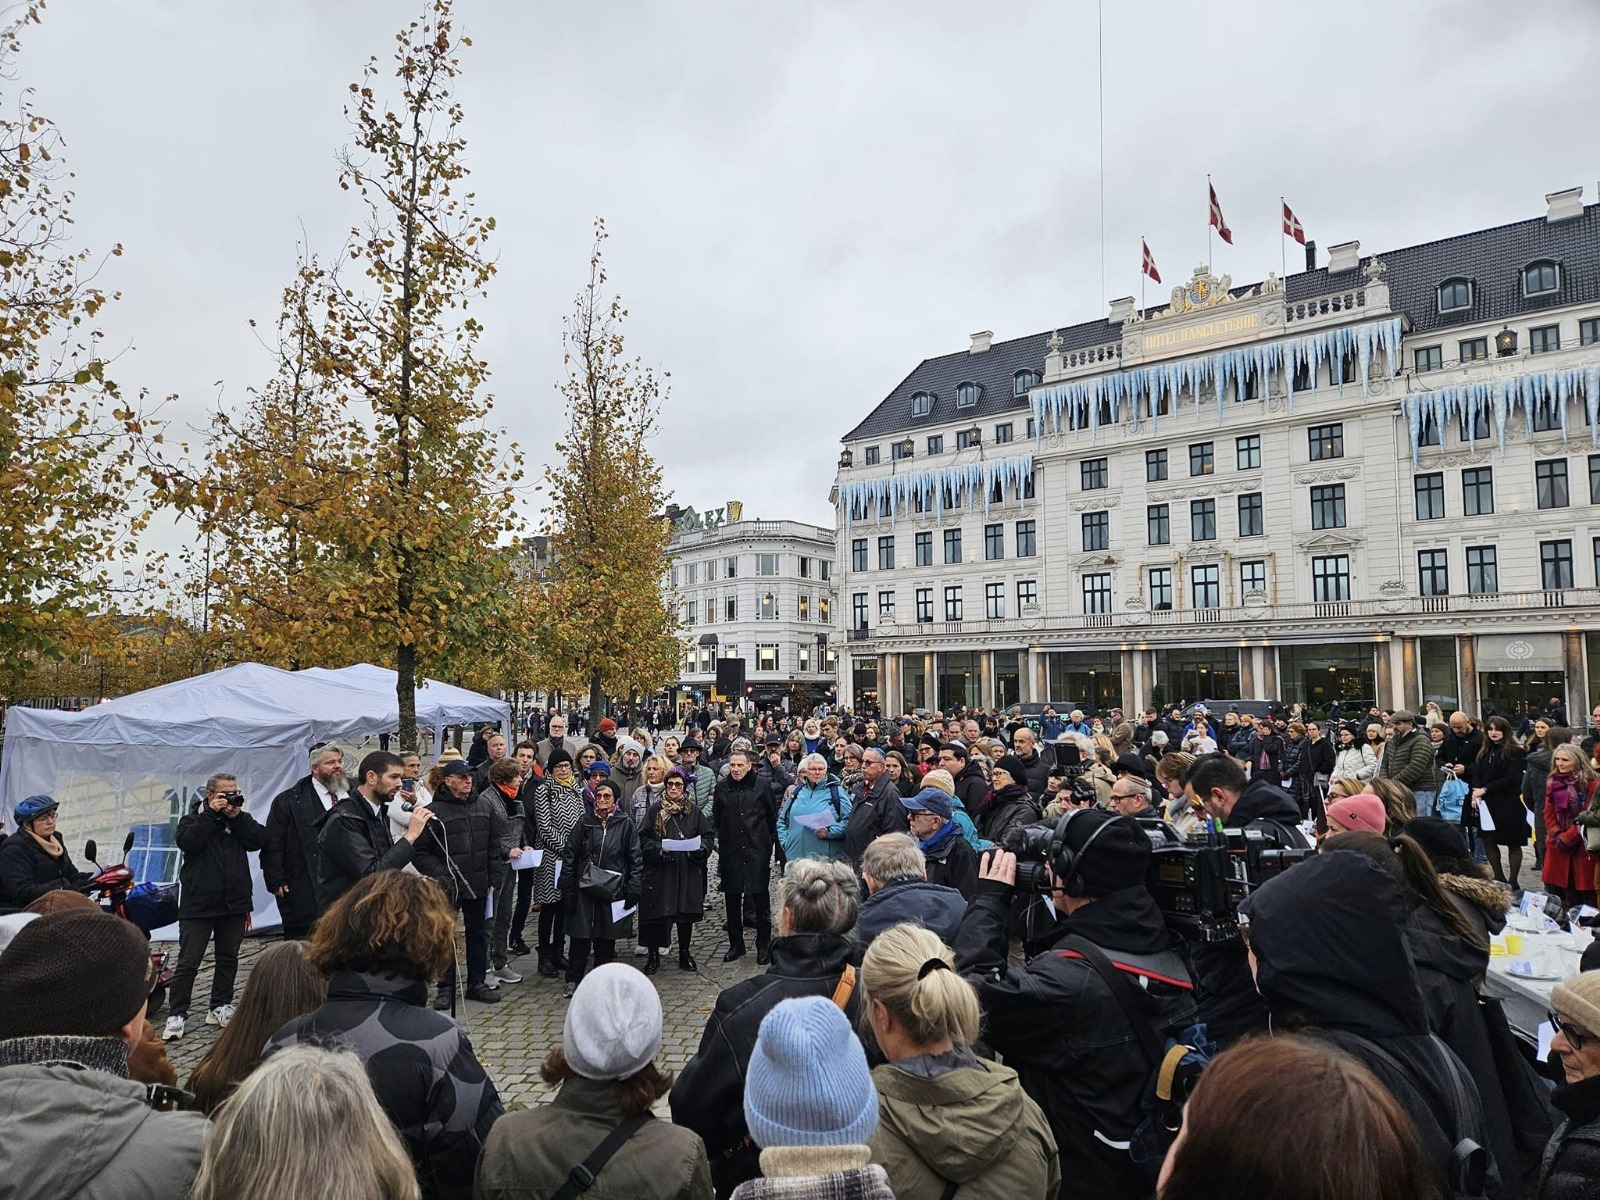 יאיר מלכיאור, הרב הראשי של דנמרק, בנאום לפני הצעדה לפרלמנט (מתוך אלבום פרטי)